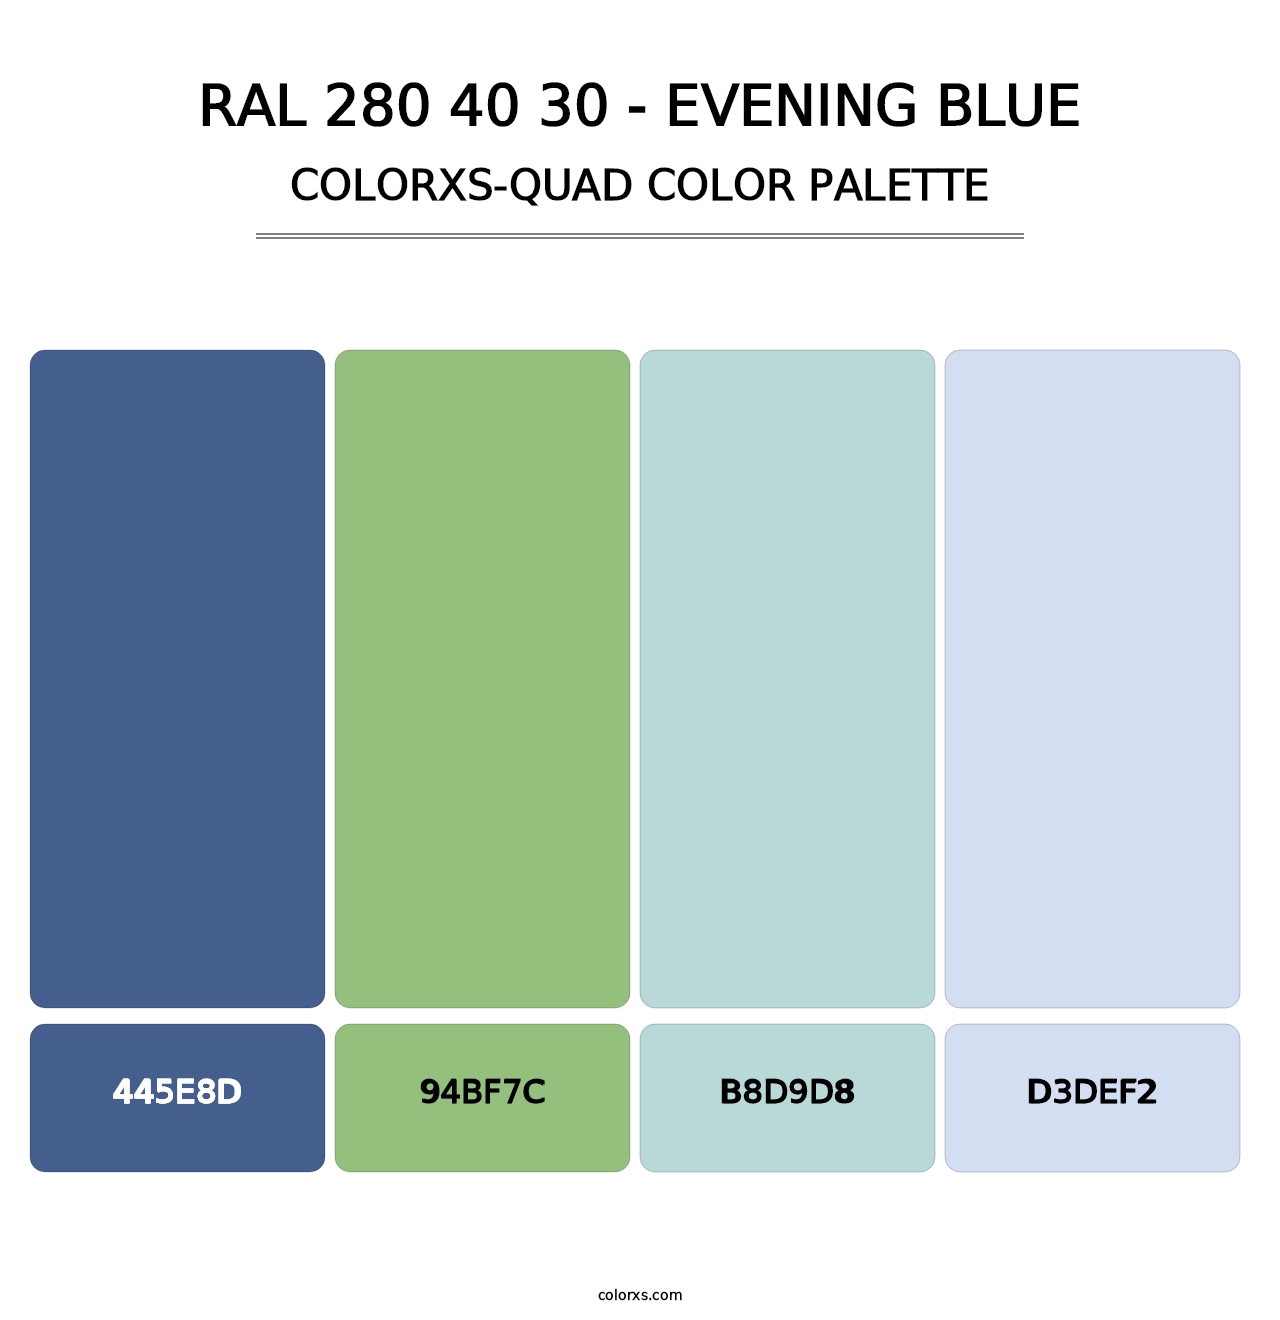 RAL 280 40 30 - Evening Blue - Colorxs Quad Palette